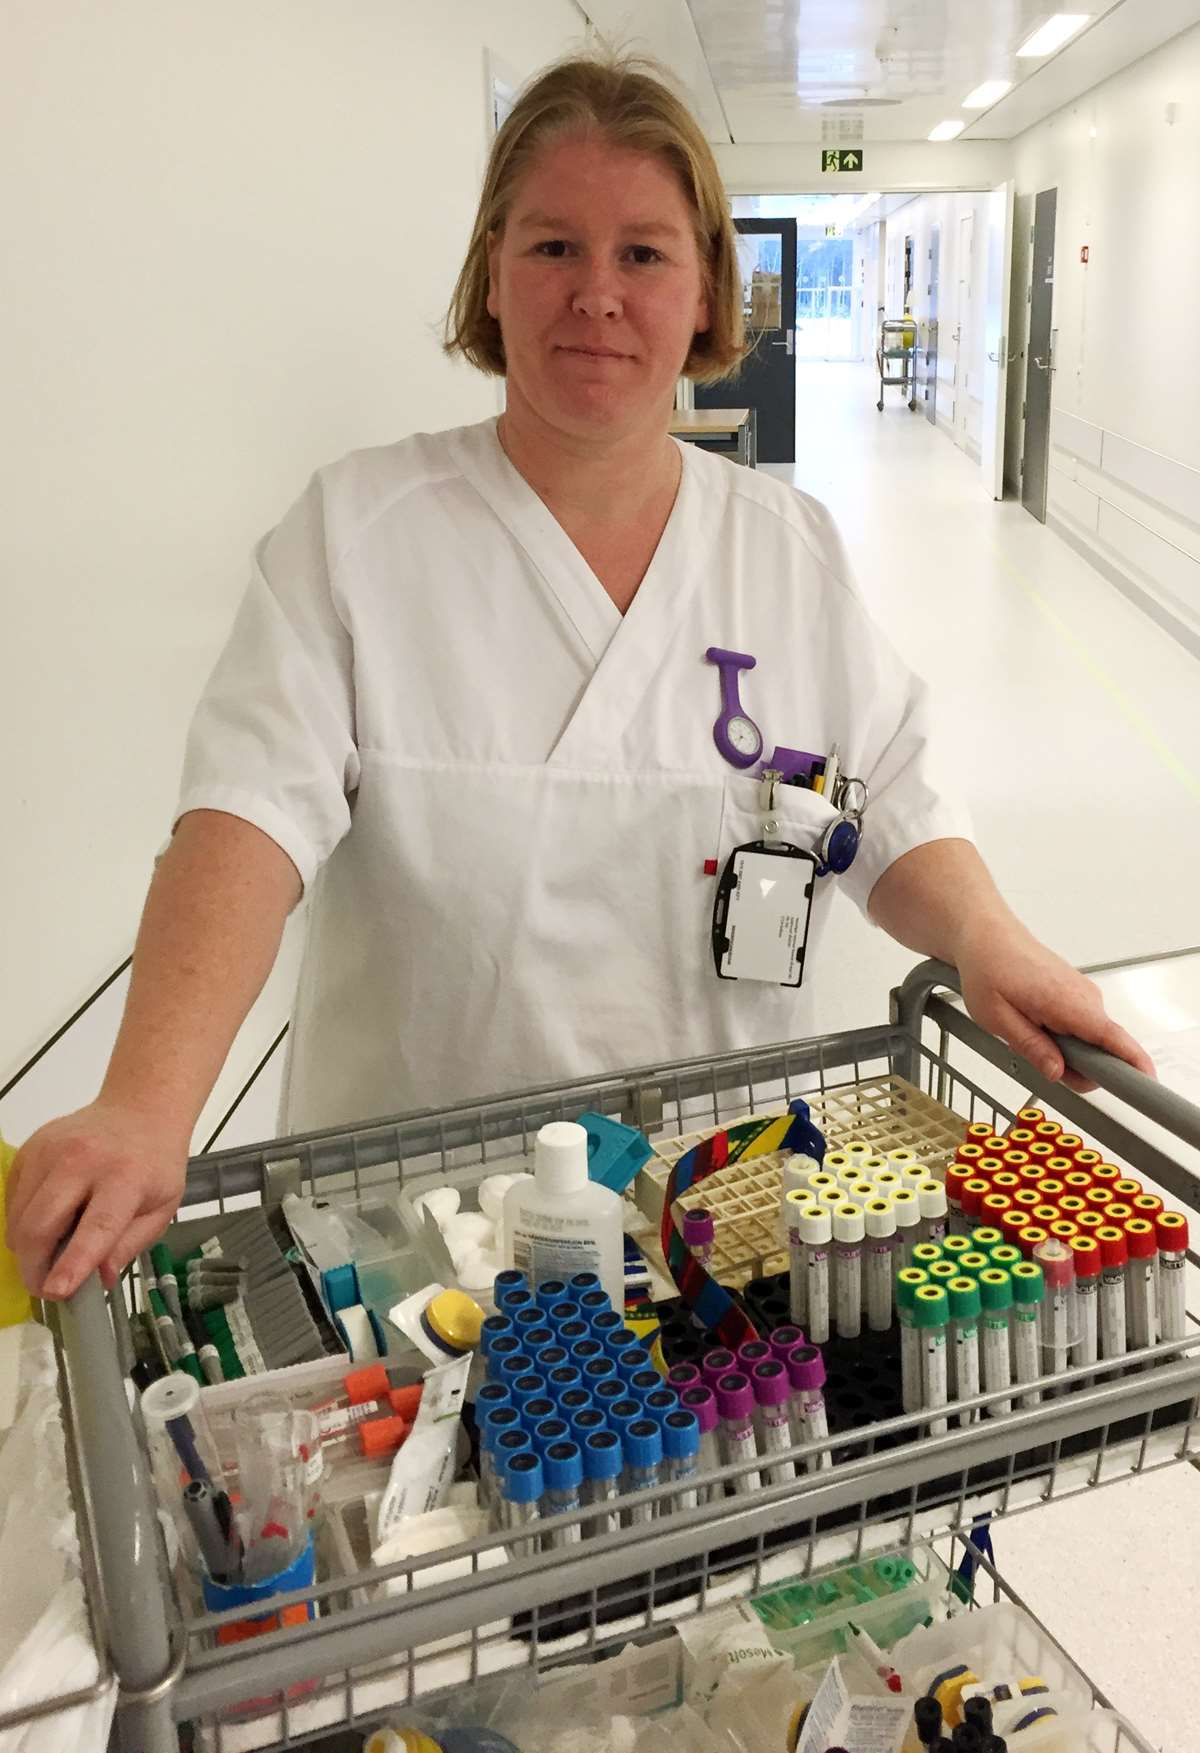 Det blir mye gåing i lange hvite korridorer for de bioingeniørene som fremdeles tar blodprøver. Cecilie Pettersen er en av bioingeniørene som lærer opp sykepleiere i blodprøvetaking.